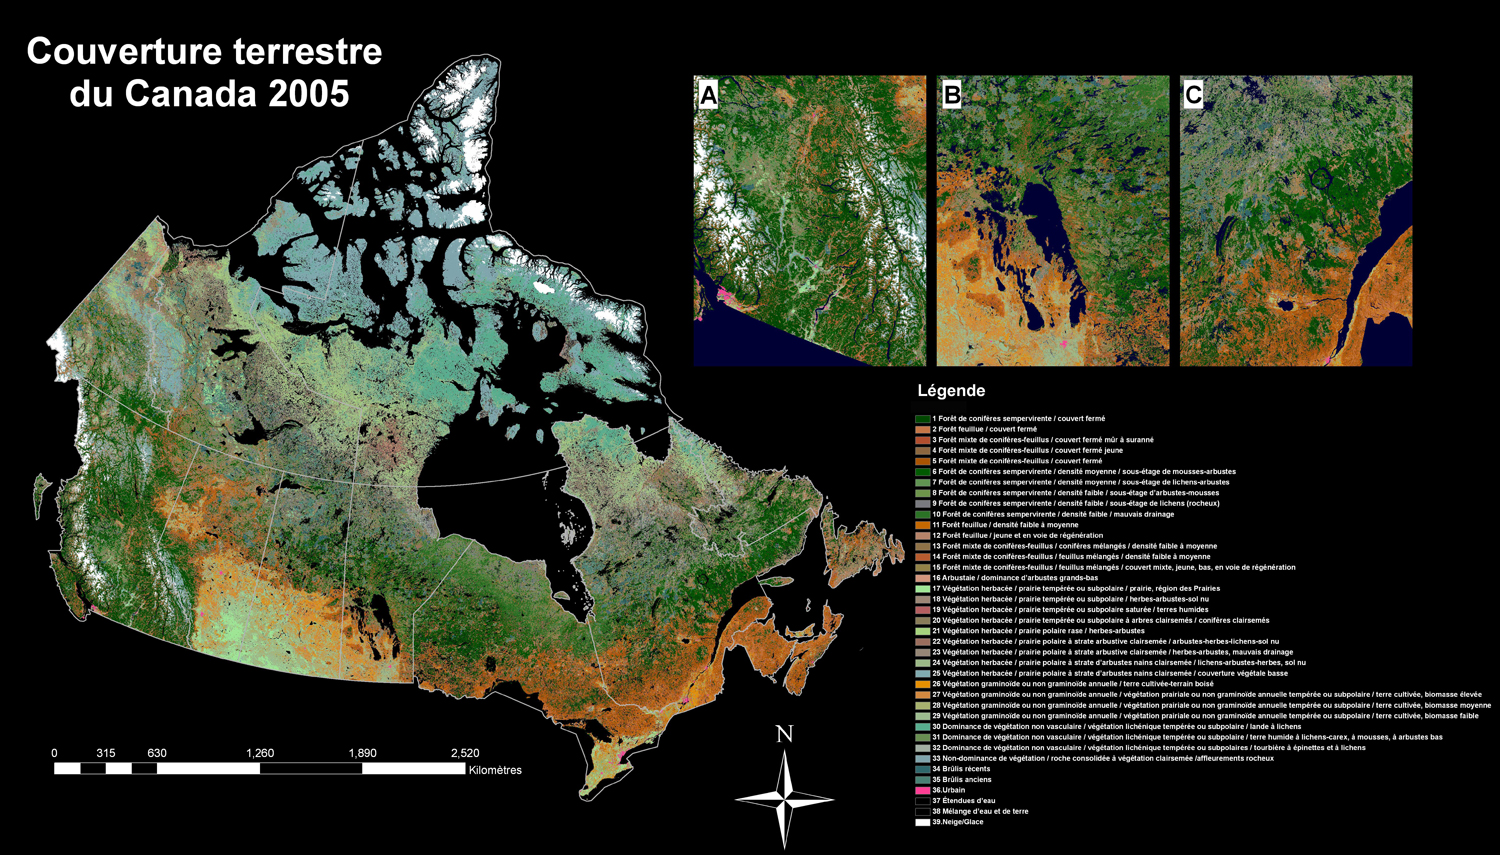 Cette carte image montre l’état de la couverture des terres de l’ensemble du Canada en 2005. Tel qu’indiqué dans le texte, un ensemble important d’images satellitaires ont été corrigées radiométriquement et géométriquement, et intégrées de façon raffinée pour générer ce produit assorti d’une légende couvrant 39 éléments, dont la majorité se réfèrent à divers types de couverture végétale.